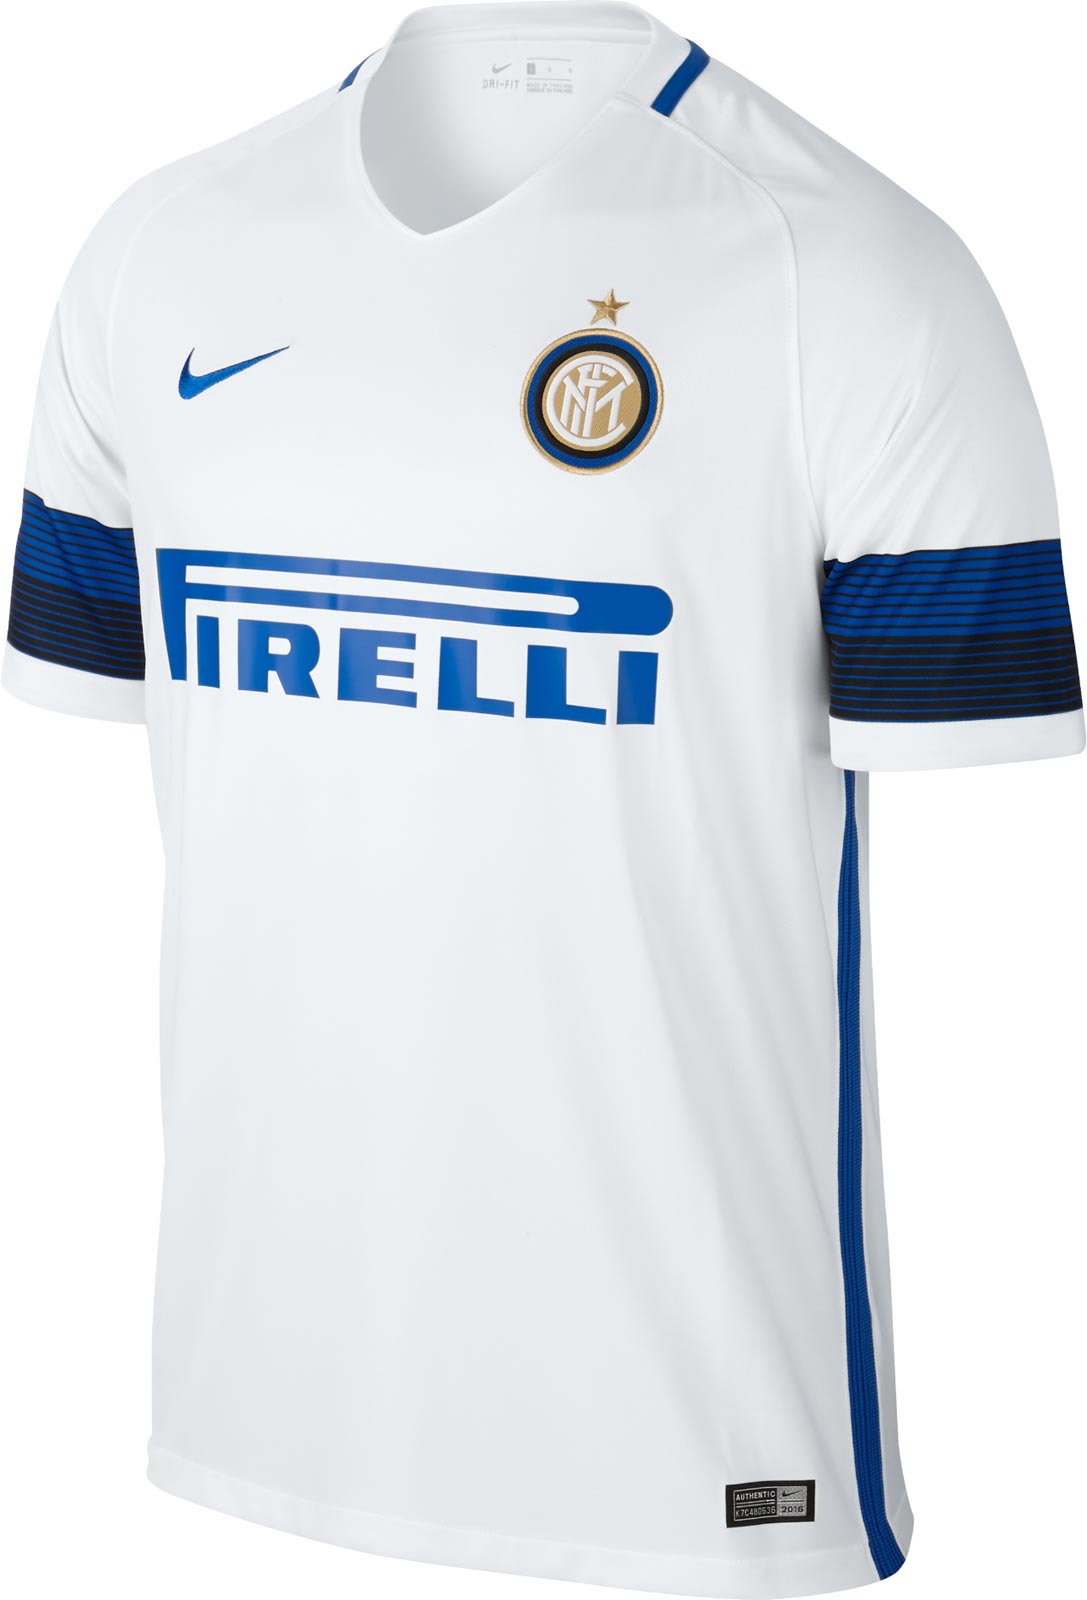 Inter Milan 16-17 Away Kit Released - Footy Headlines